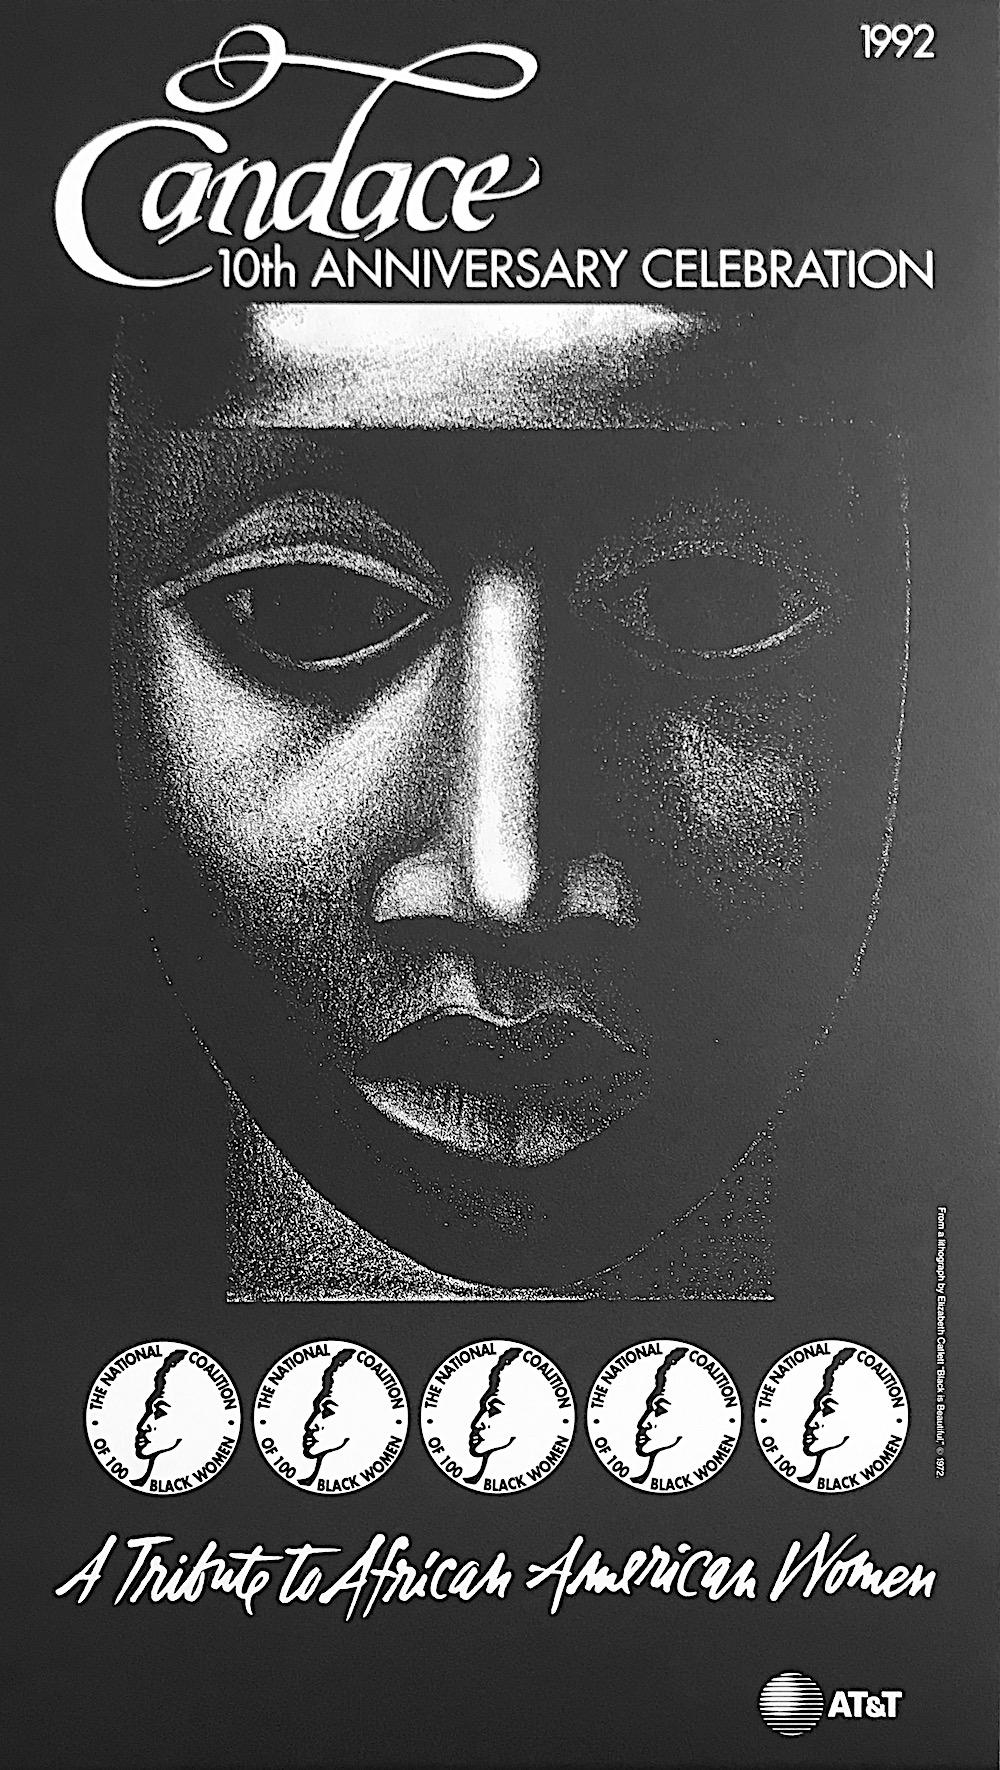 Portrait Print Elizabeth Catlett - CANDACE, portrait de femme noire rendant hommage aux femmes afro-américaines, 1992 